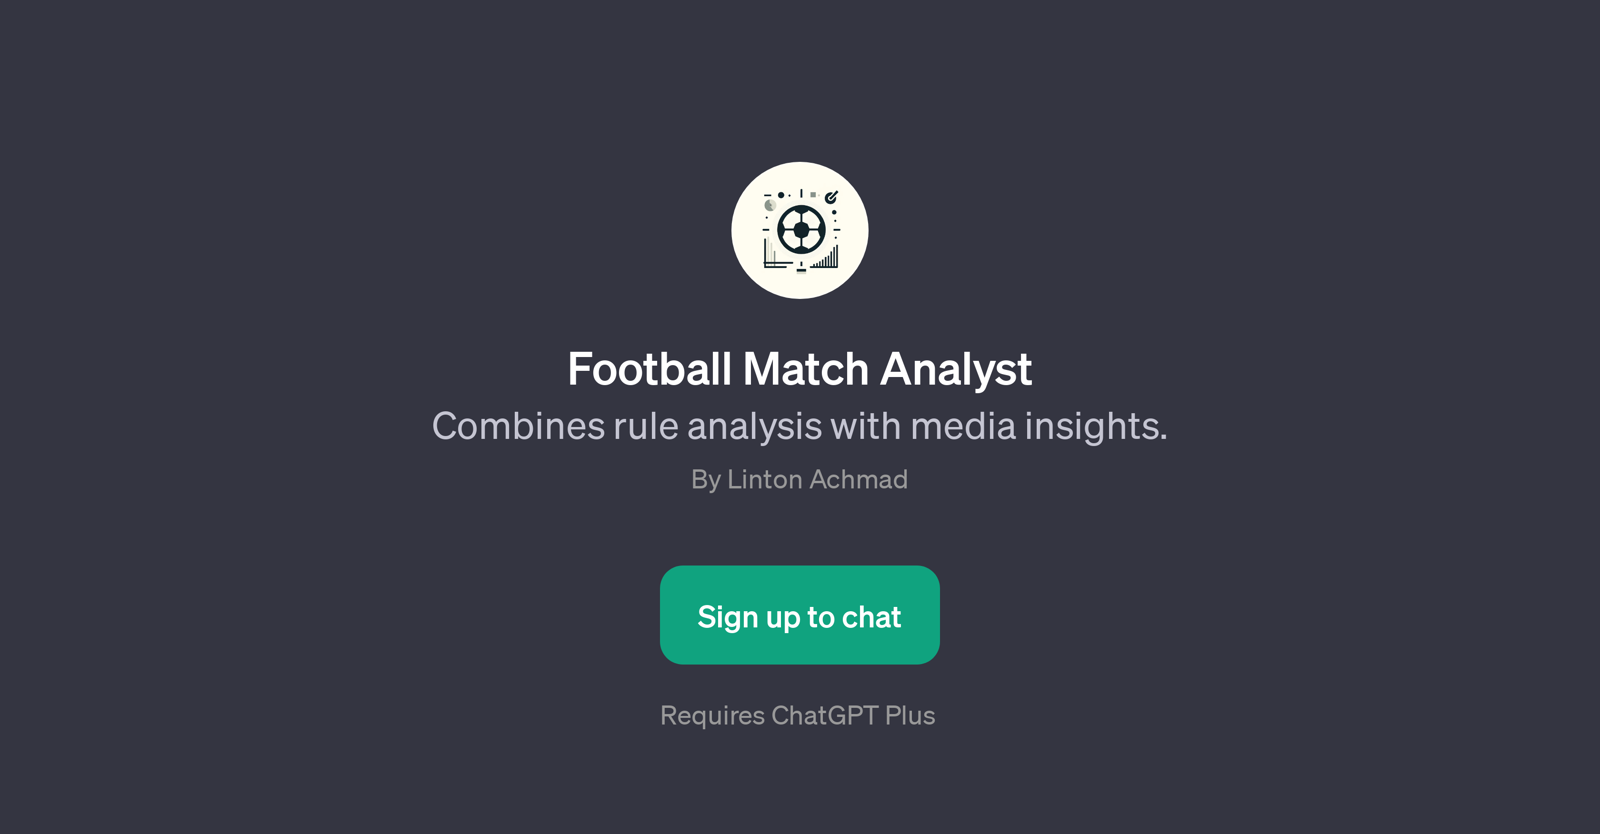 Football Match Analyst website